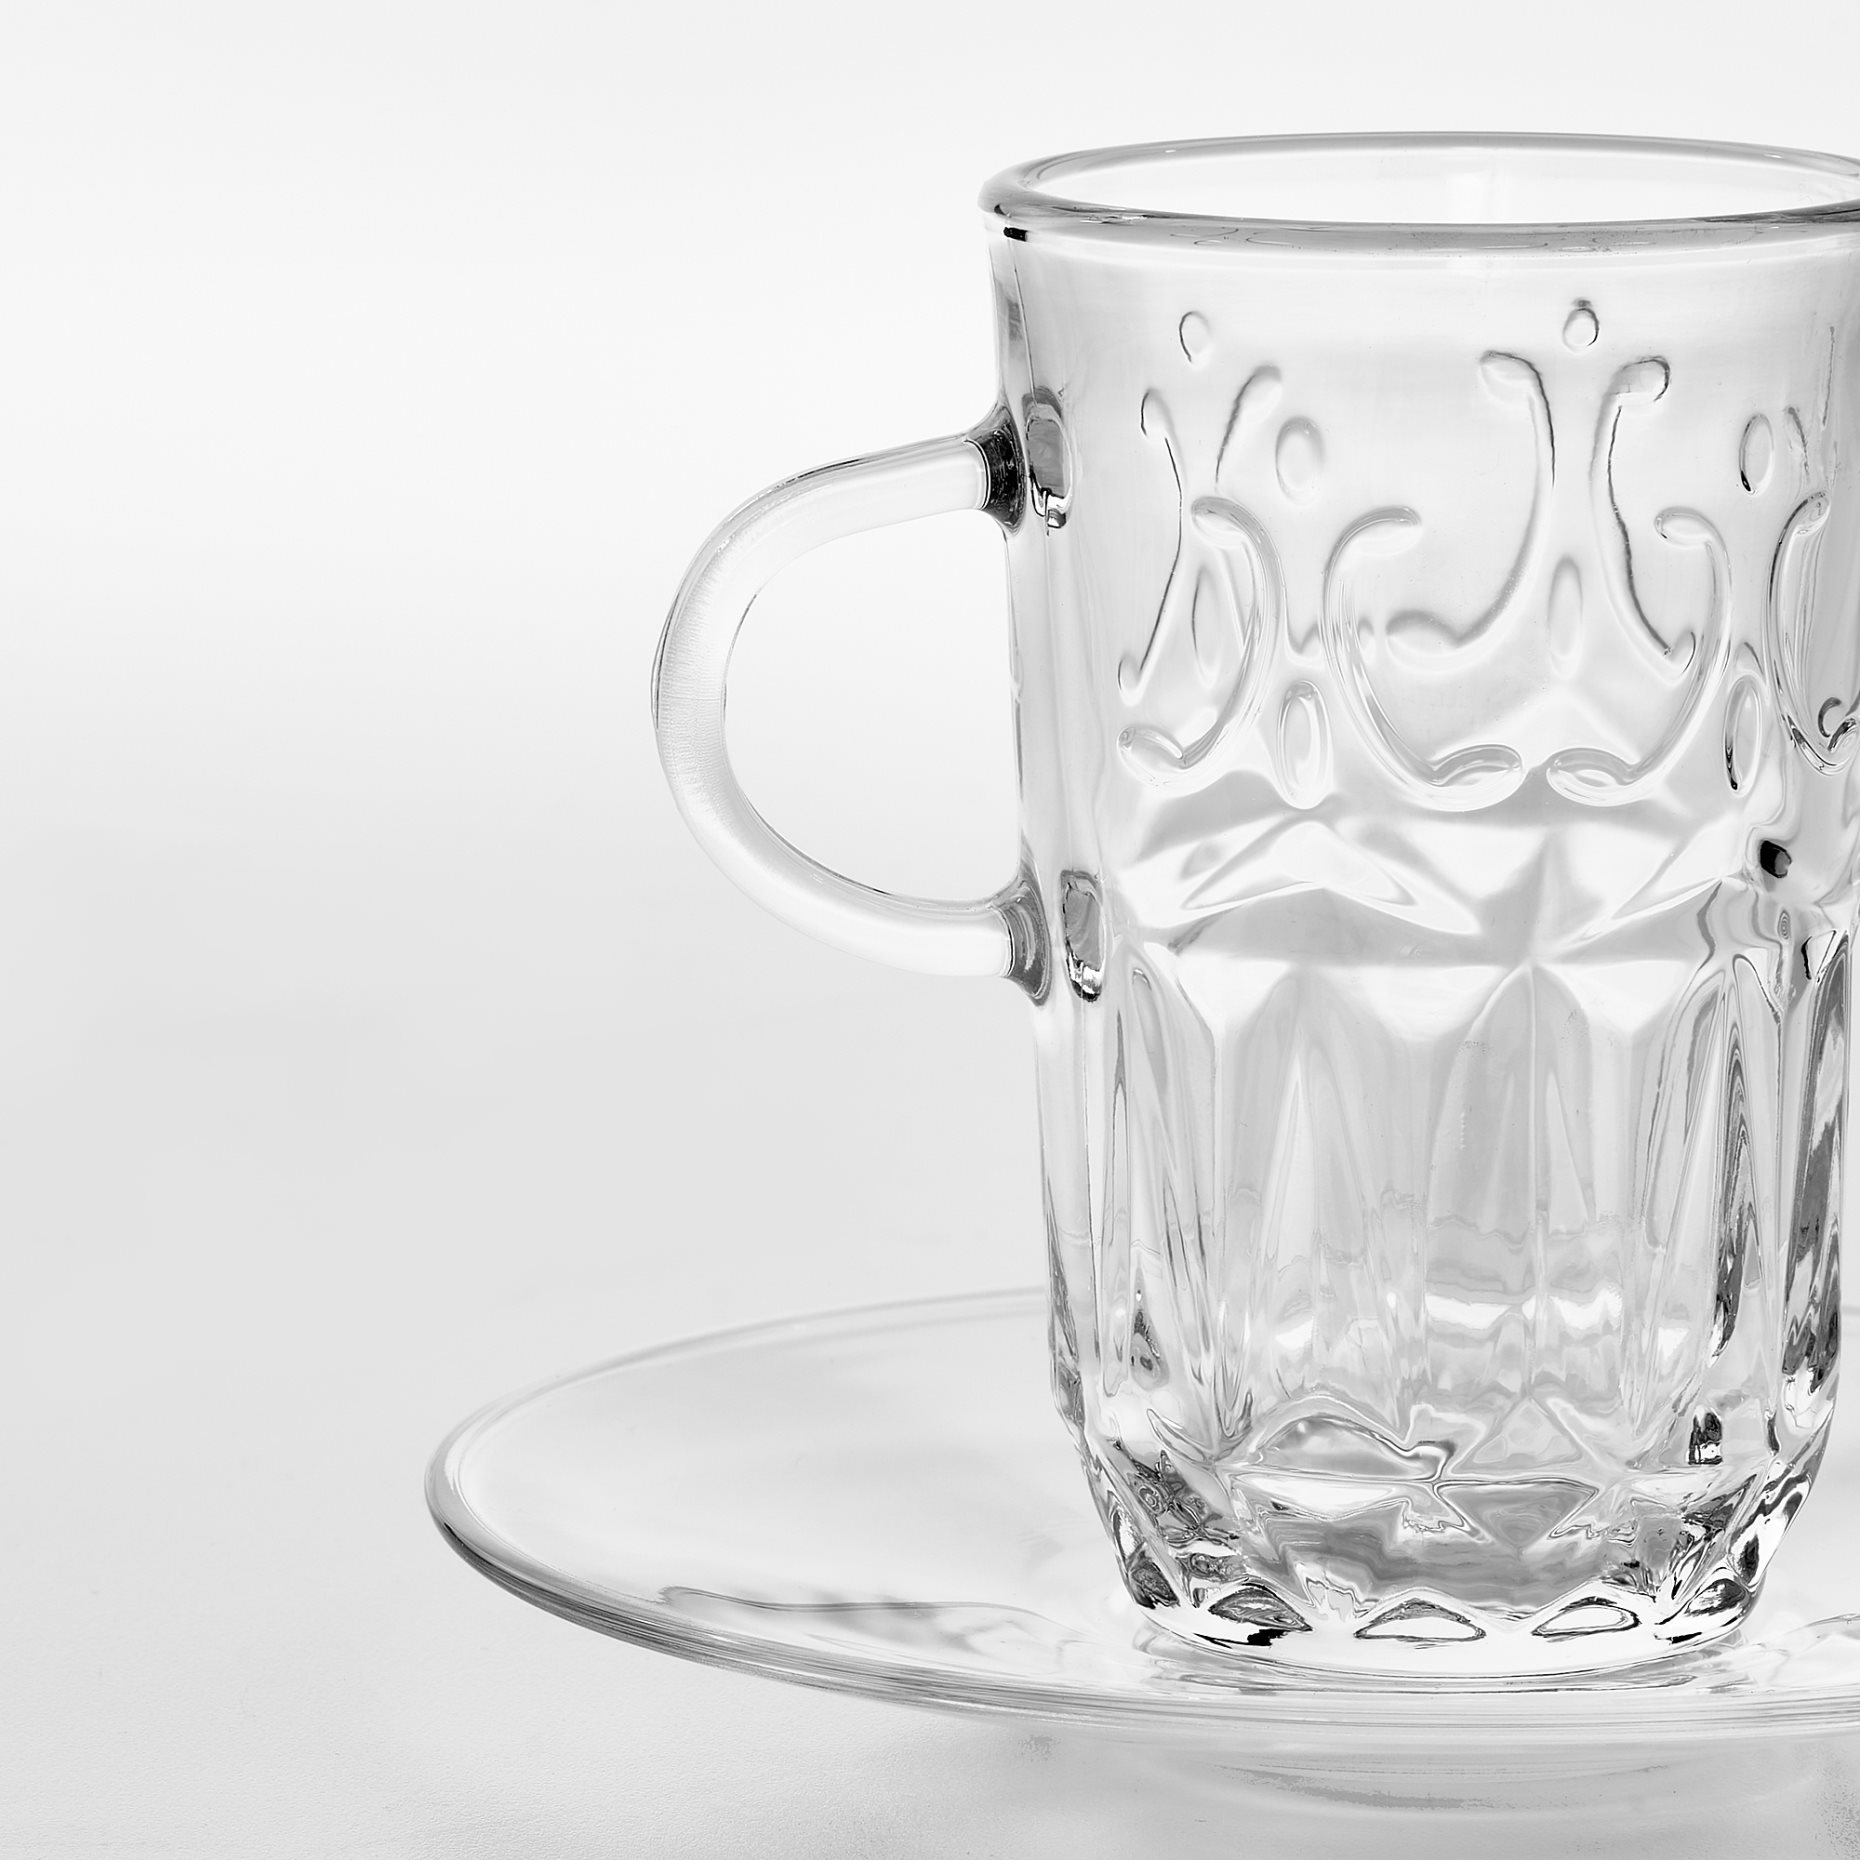 SÄLLSKAPLIG, cup with saucer, 7 cl, 504.780.04